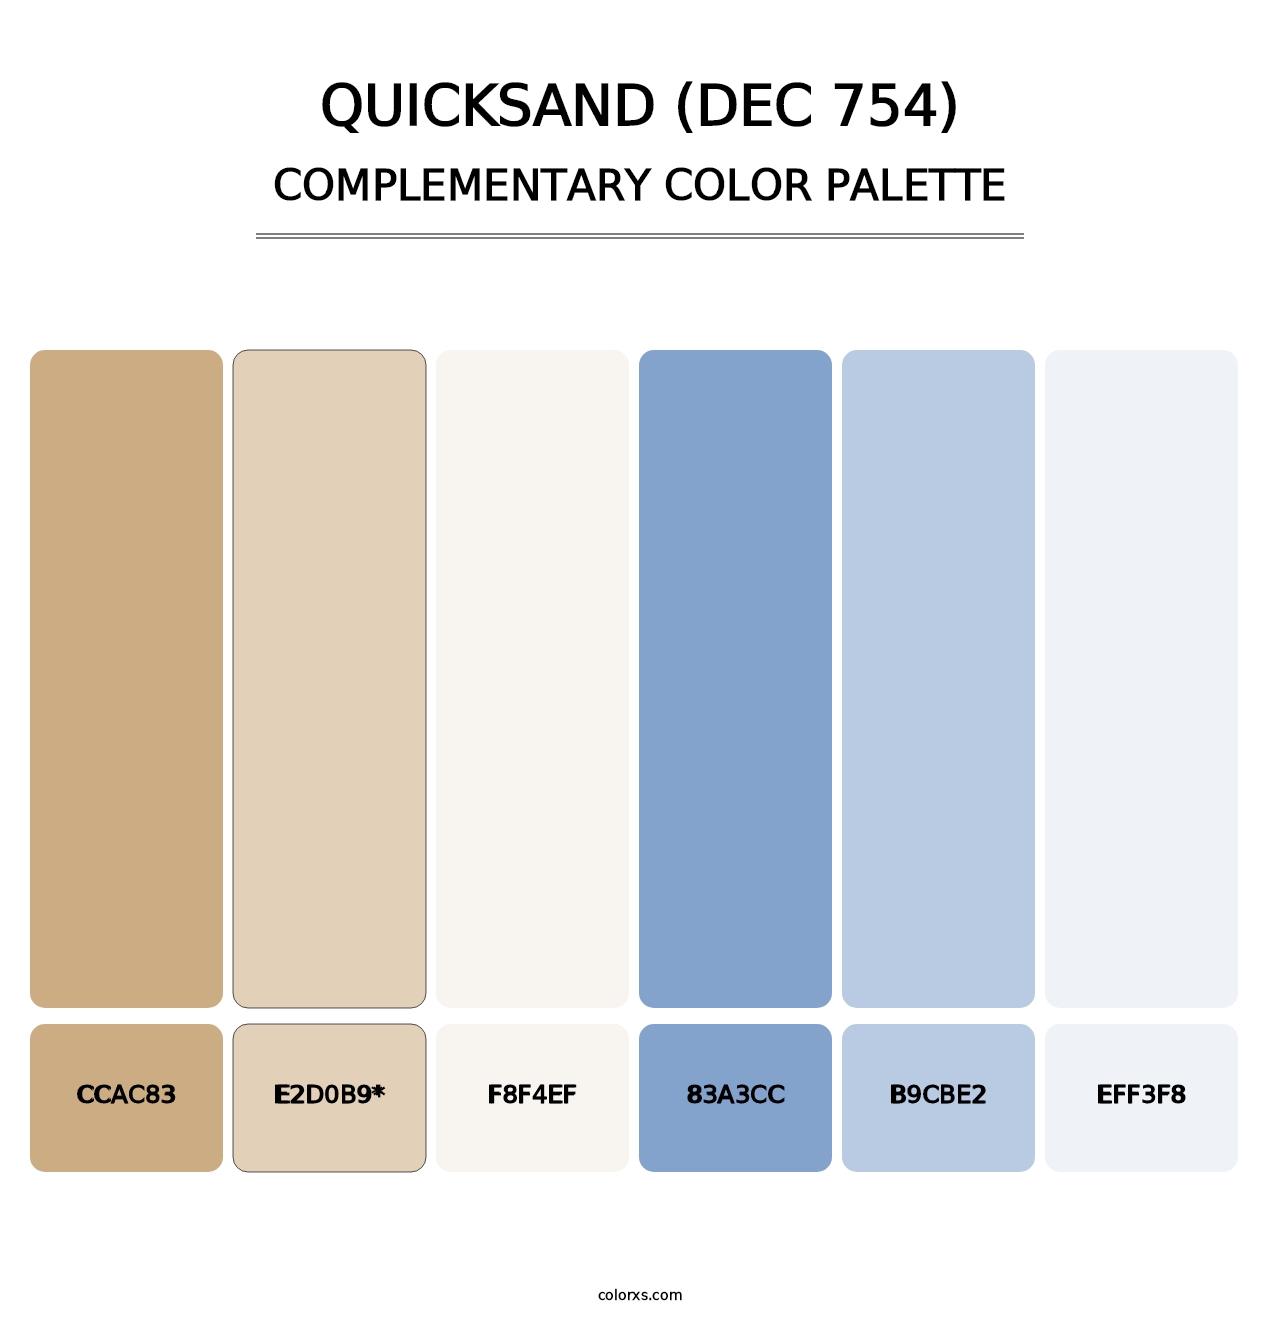 Quicksand (DEC 754) - Complementary Color Palette